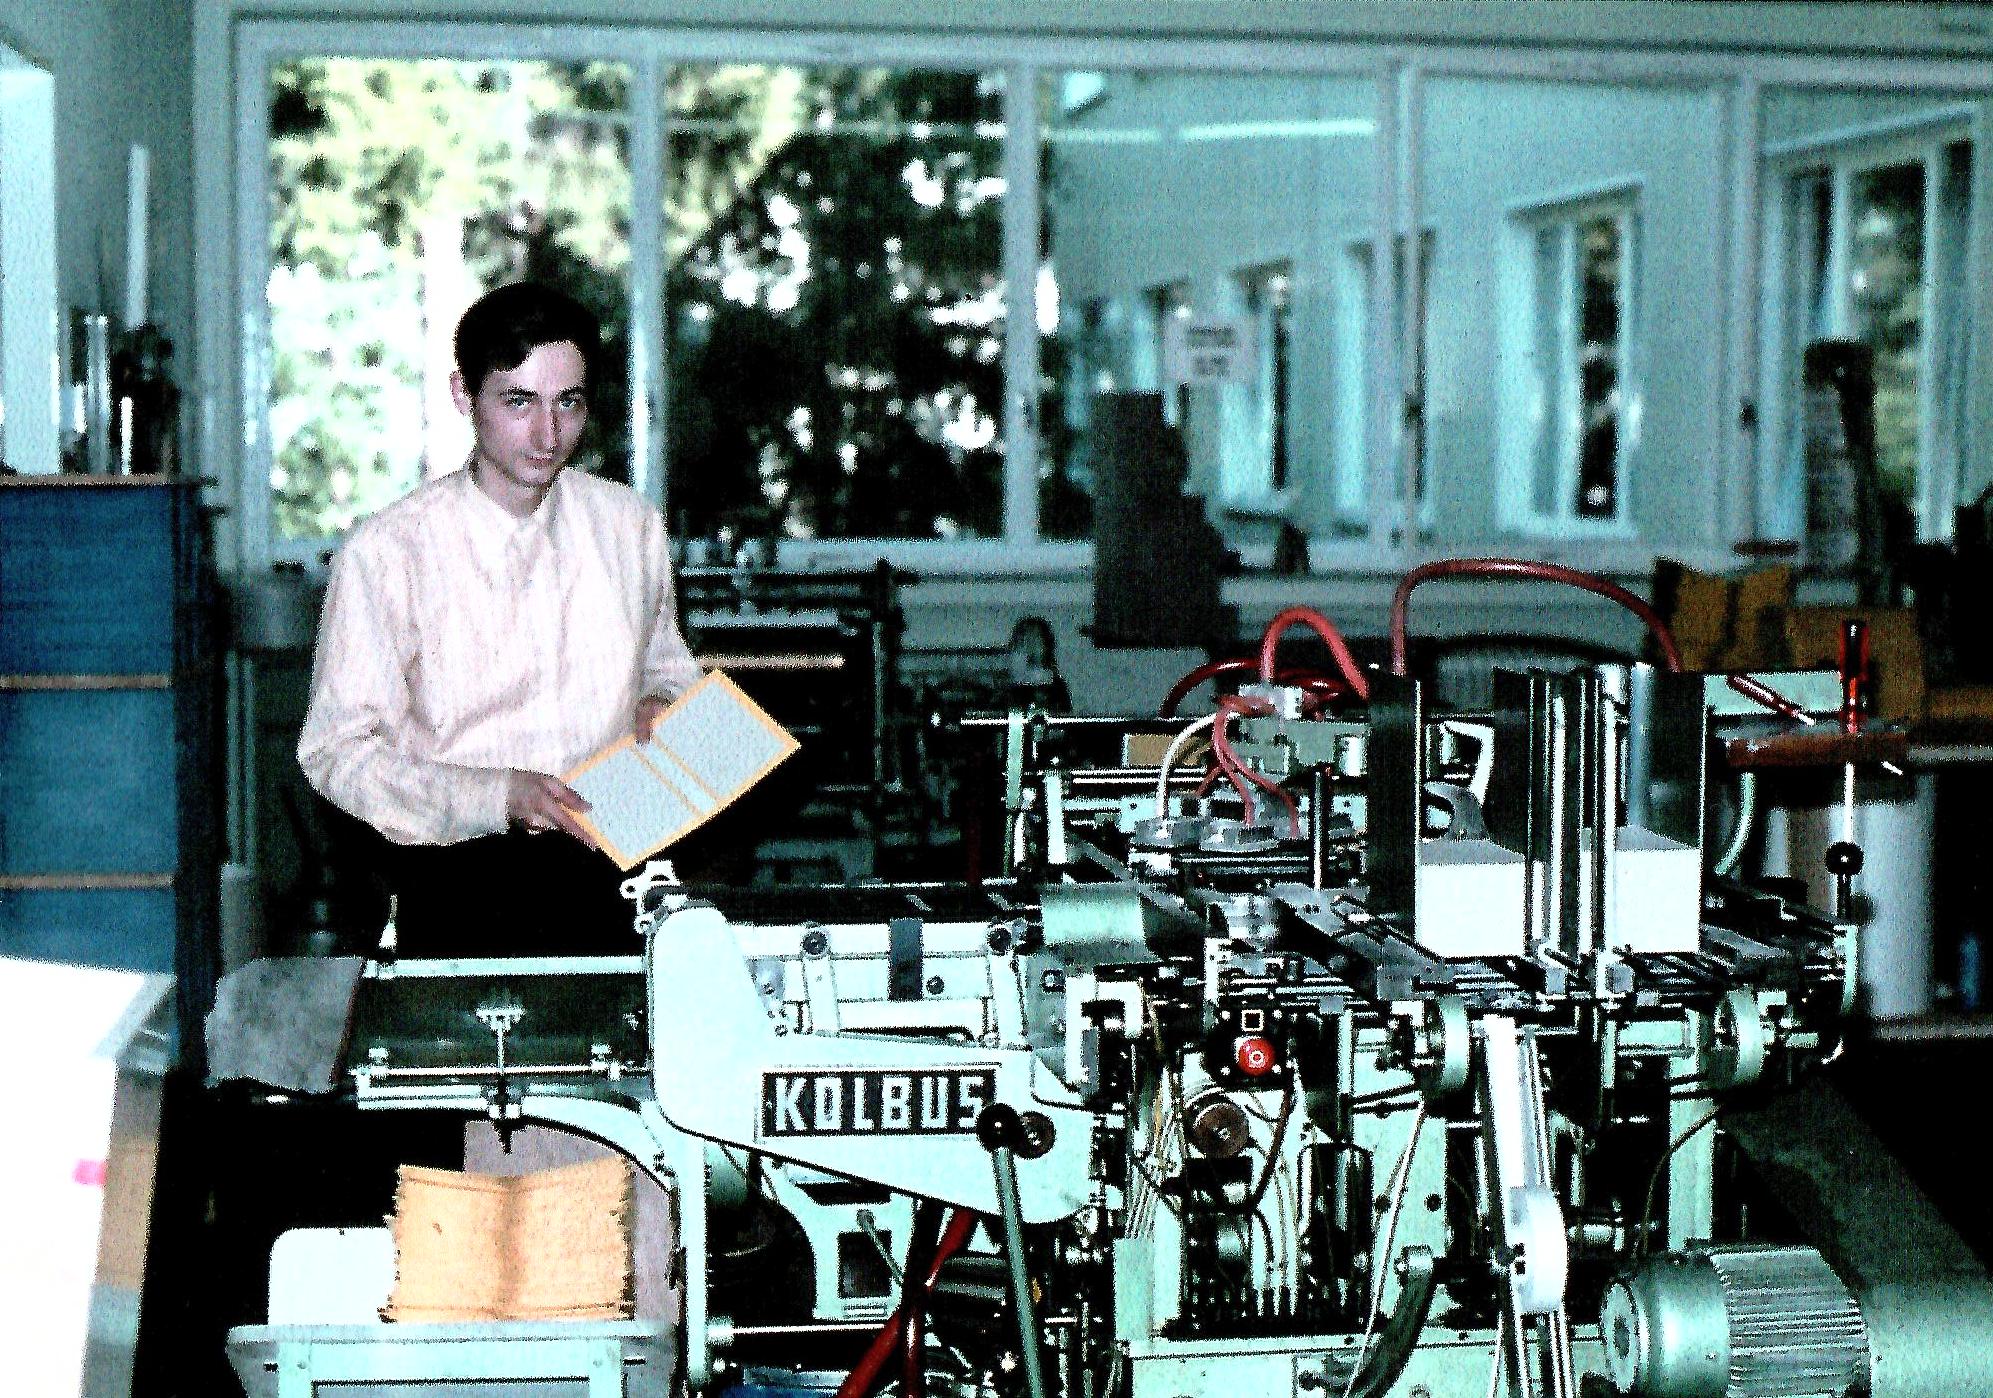 Großbuchbinderei, am Deckenautomaten, 1974